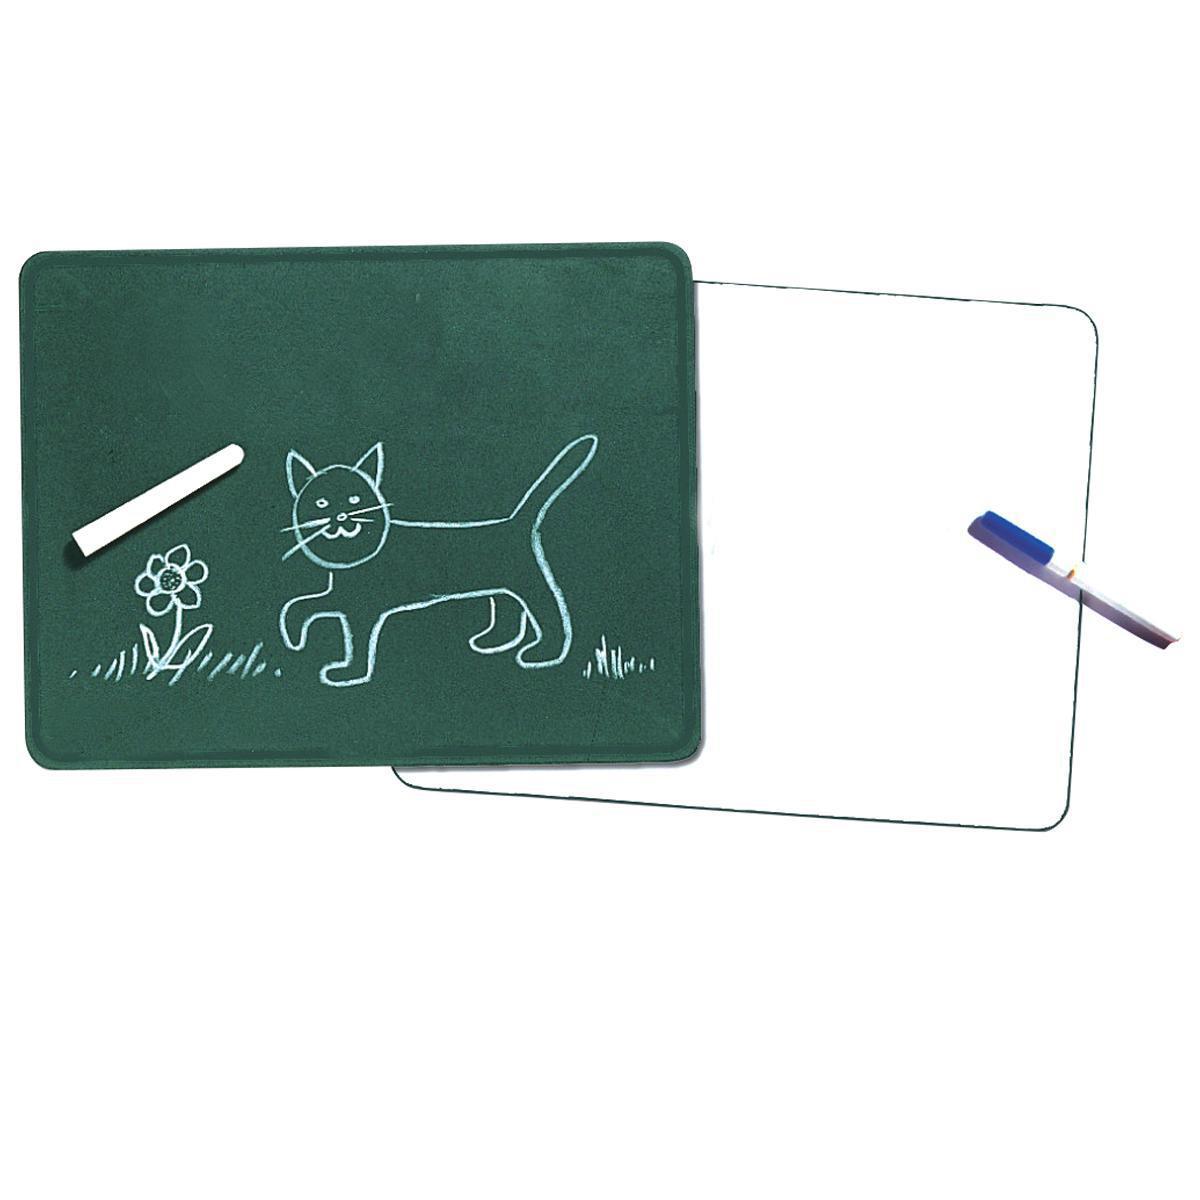  Dry Erase/Chalkboards 10-Pack 